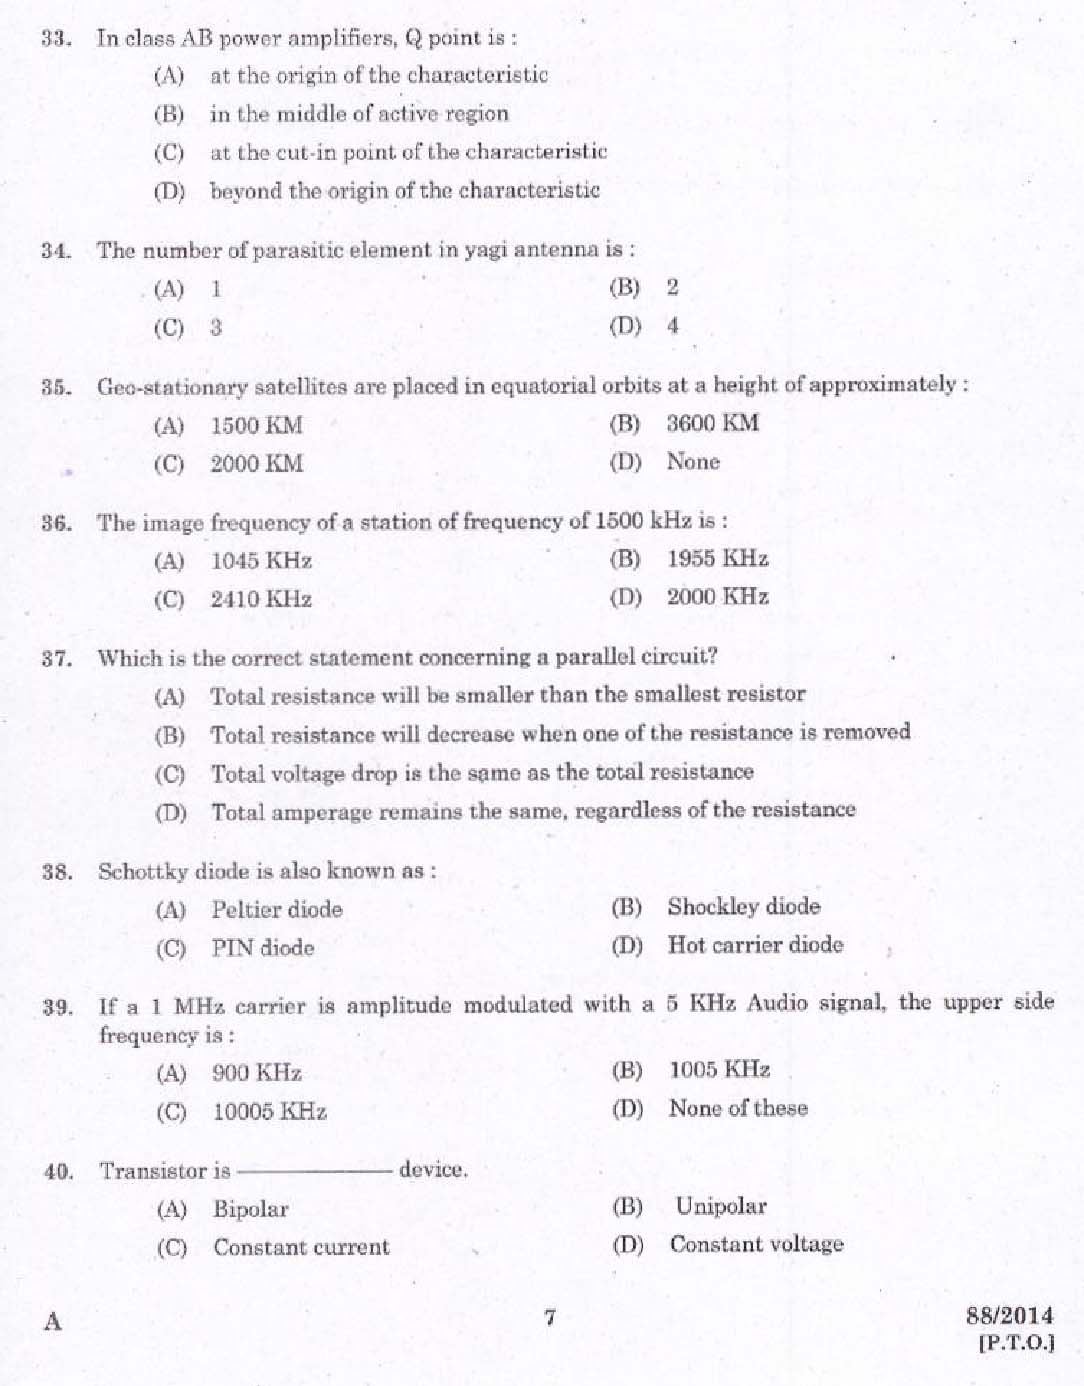 Kerala PSC Junior Instructor Exam Question Paper Code 882014 5